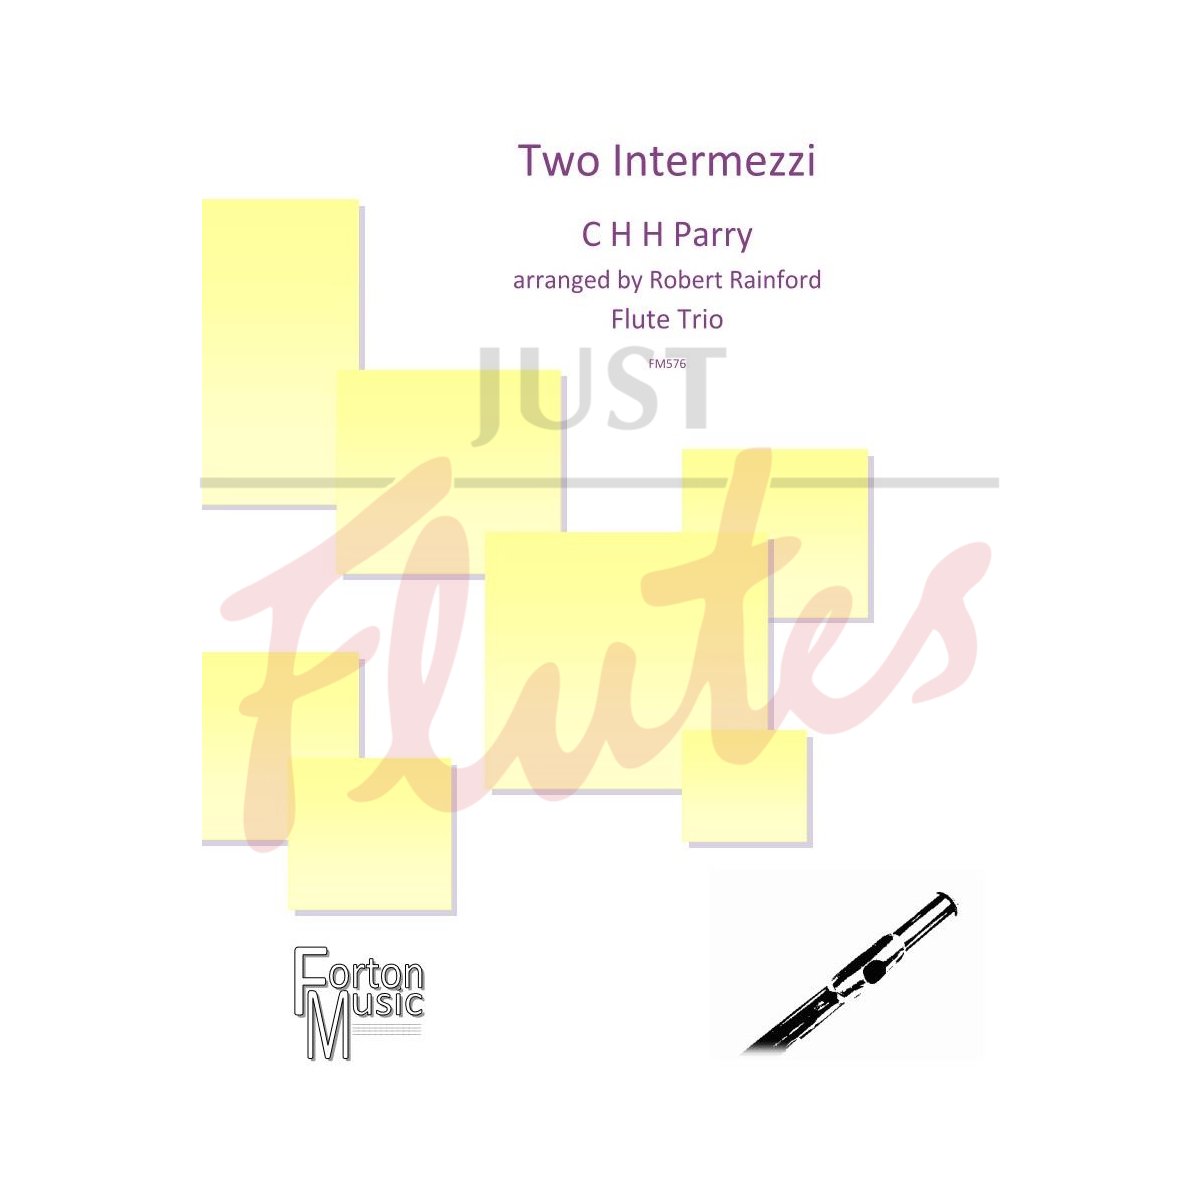 Two Intermezzi for Flute Trio